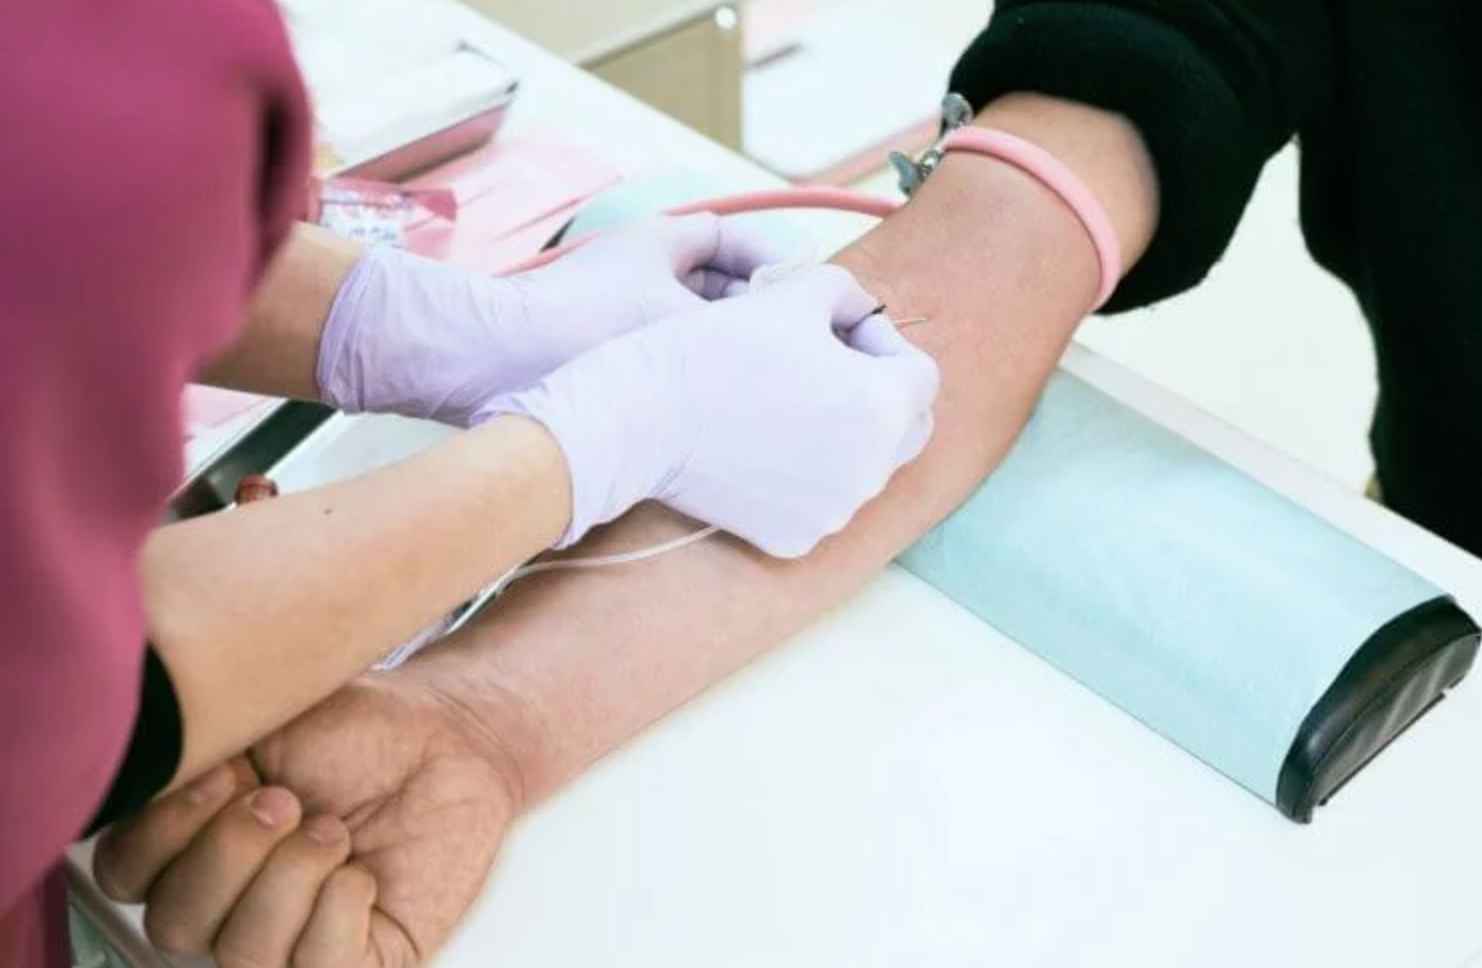 Простой анализ крови вскоре позволит выявить скрытый рак